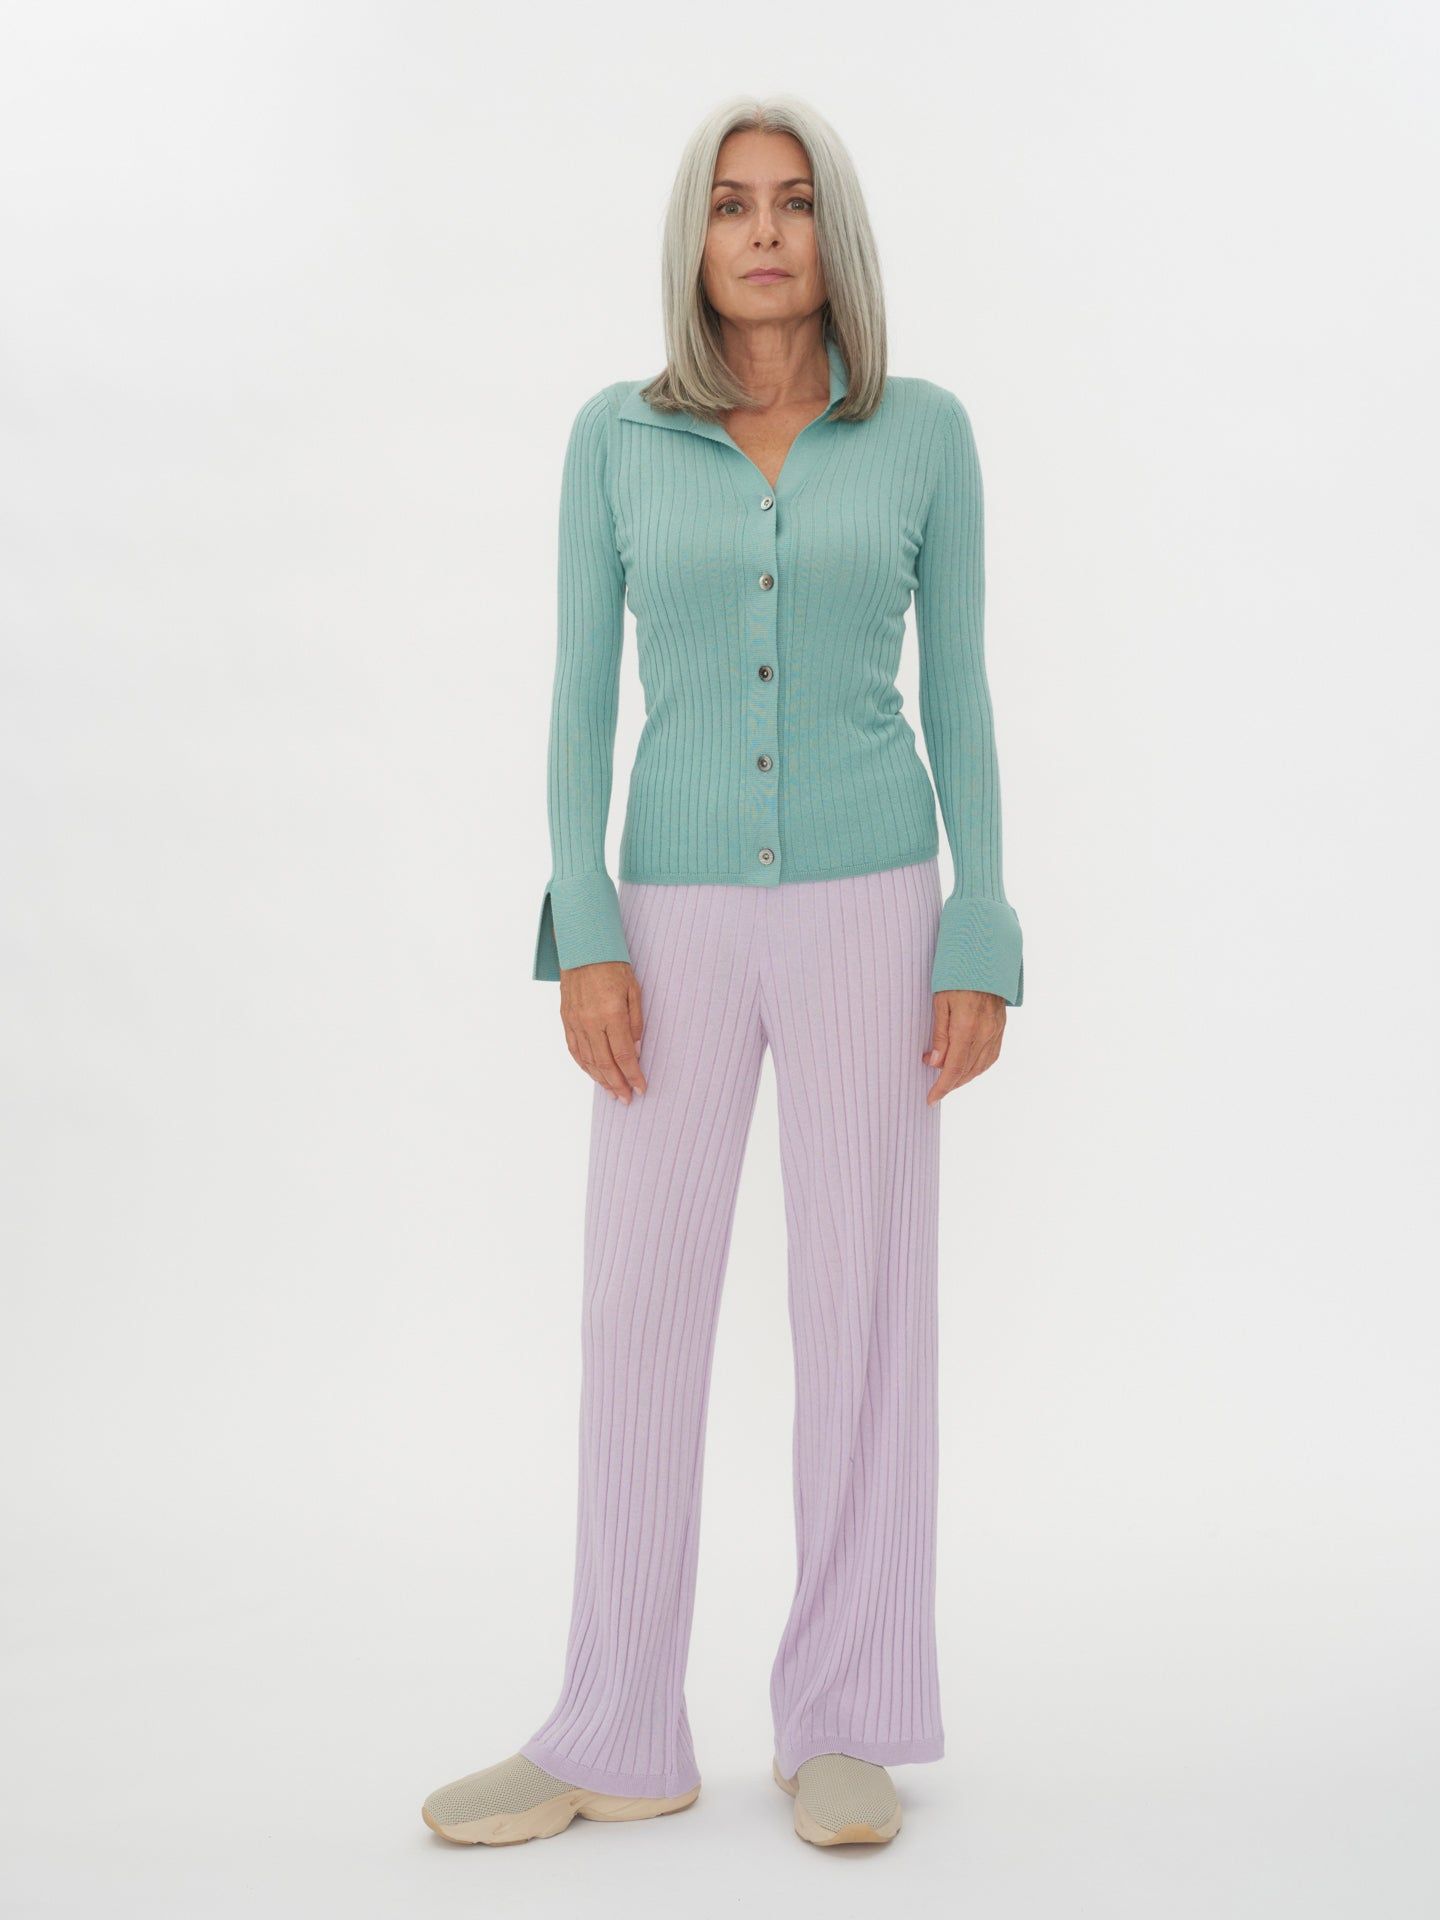 Women's Silk Cashmere Button Up Cardigan Gray Mist - Gobi Cashmere 